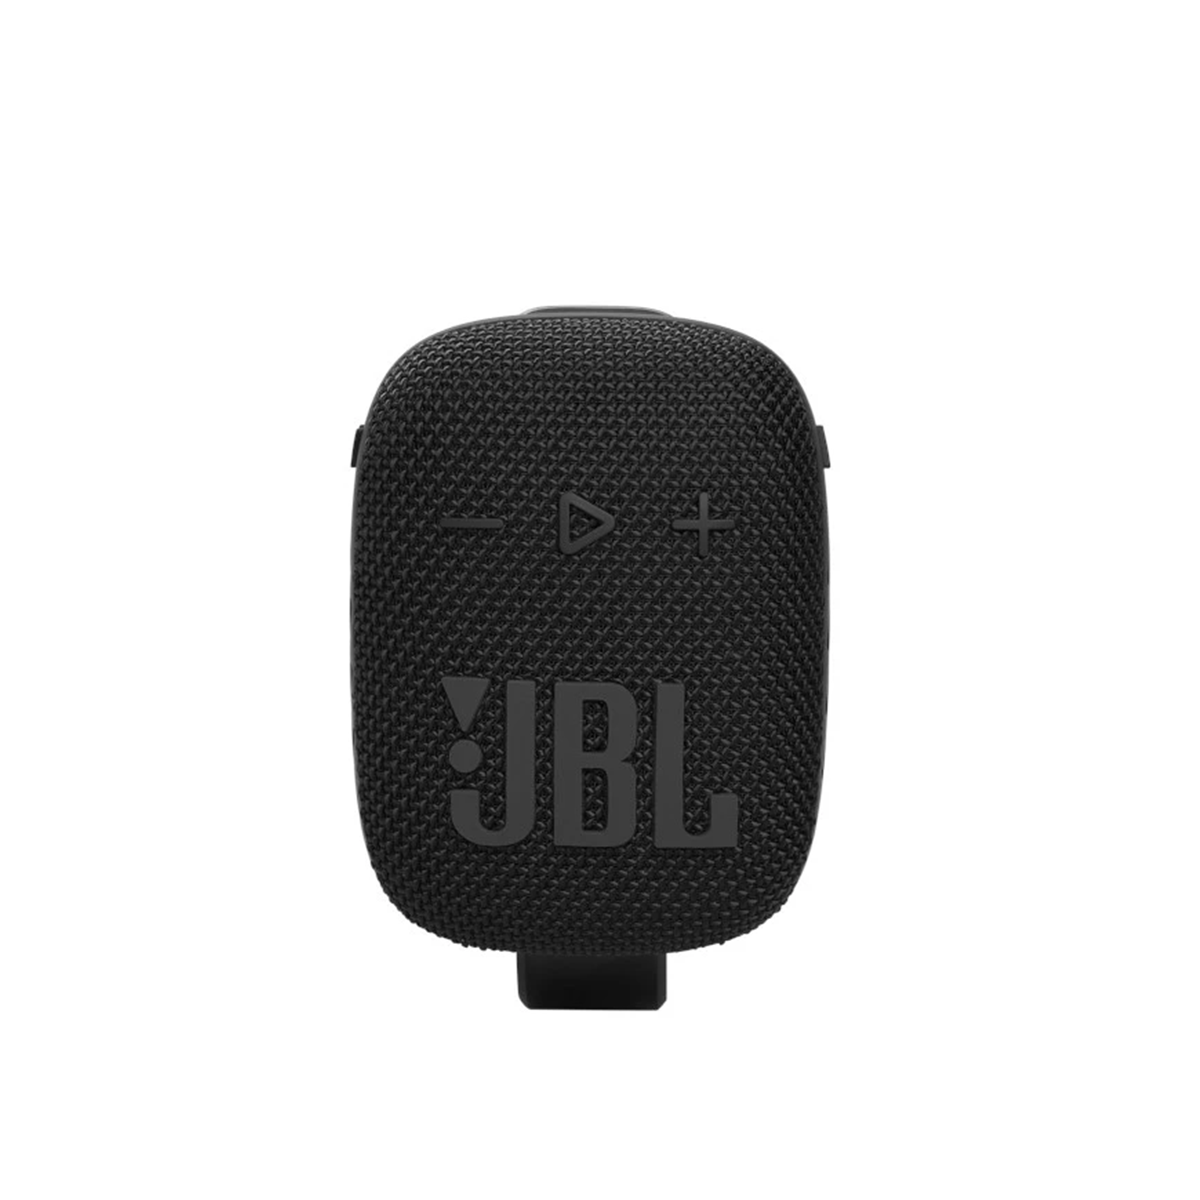  Loa Bluetooth JBL WIND 3S 